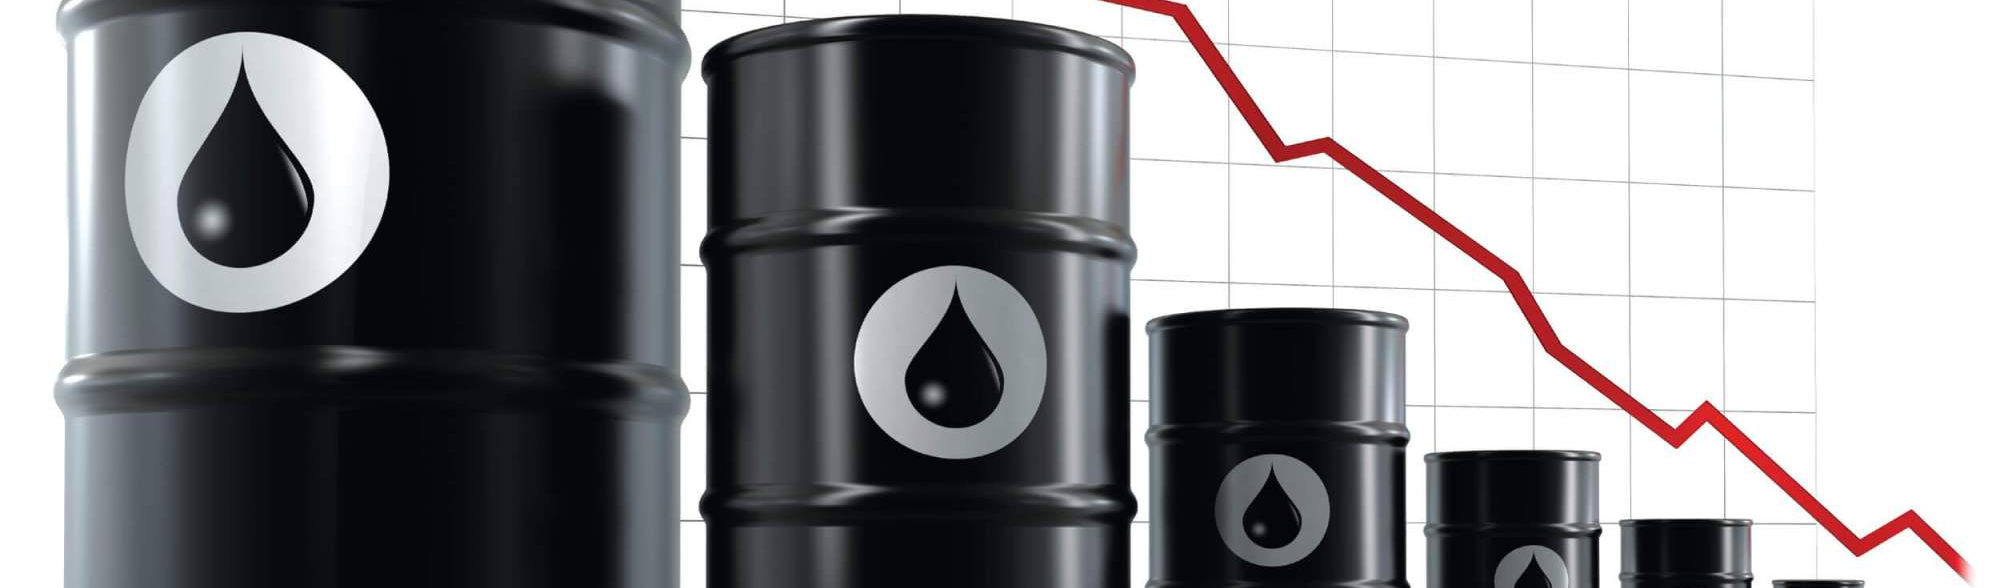 Principais chaves para entender queda do petróleo que arrasta mercados financeiros